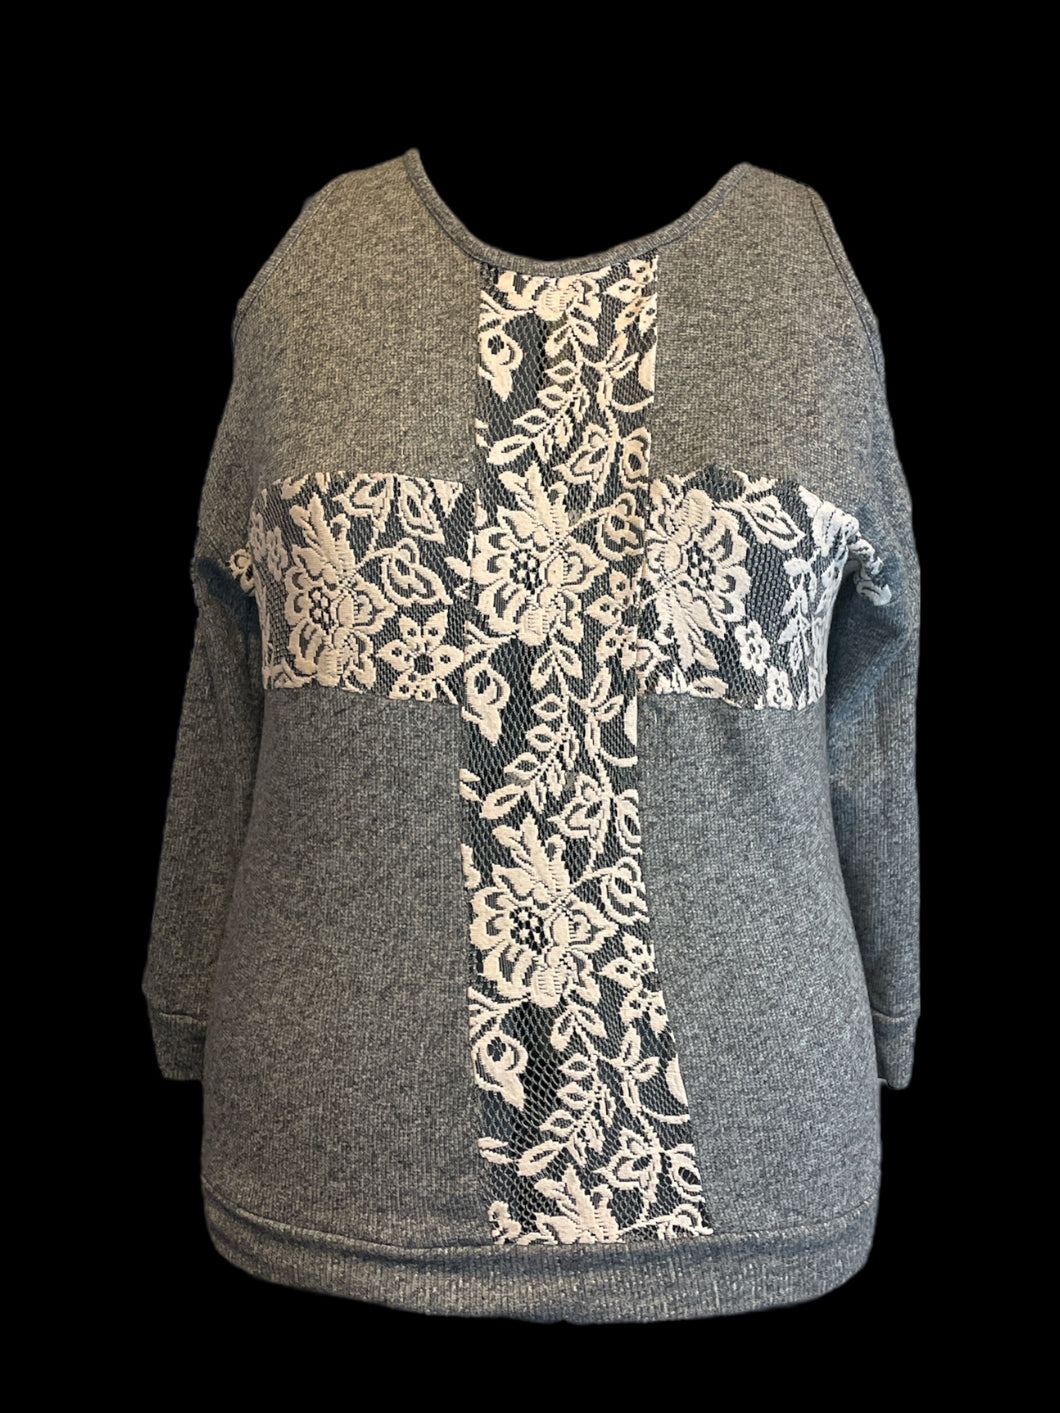 1X Heather grey cotton-blend cold shoulder knit top w/ mesh & faux cross stitch floral cross design